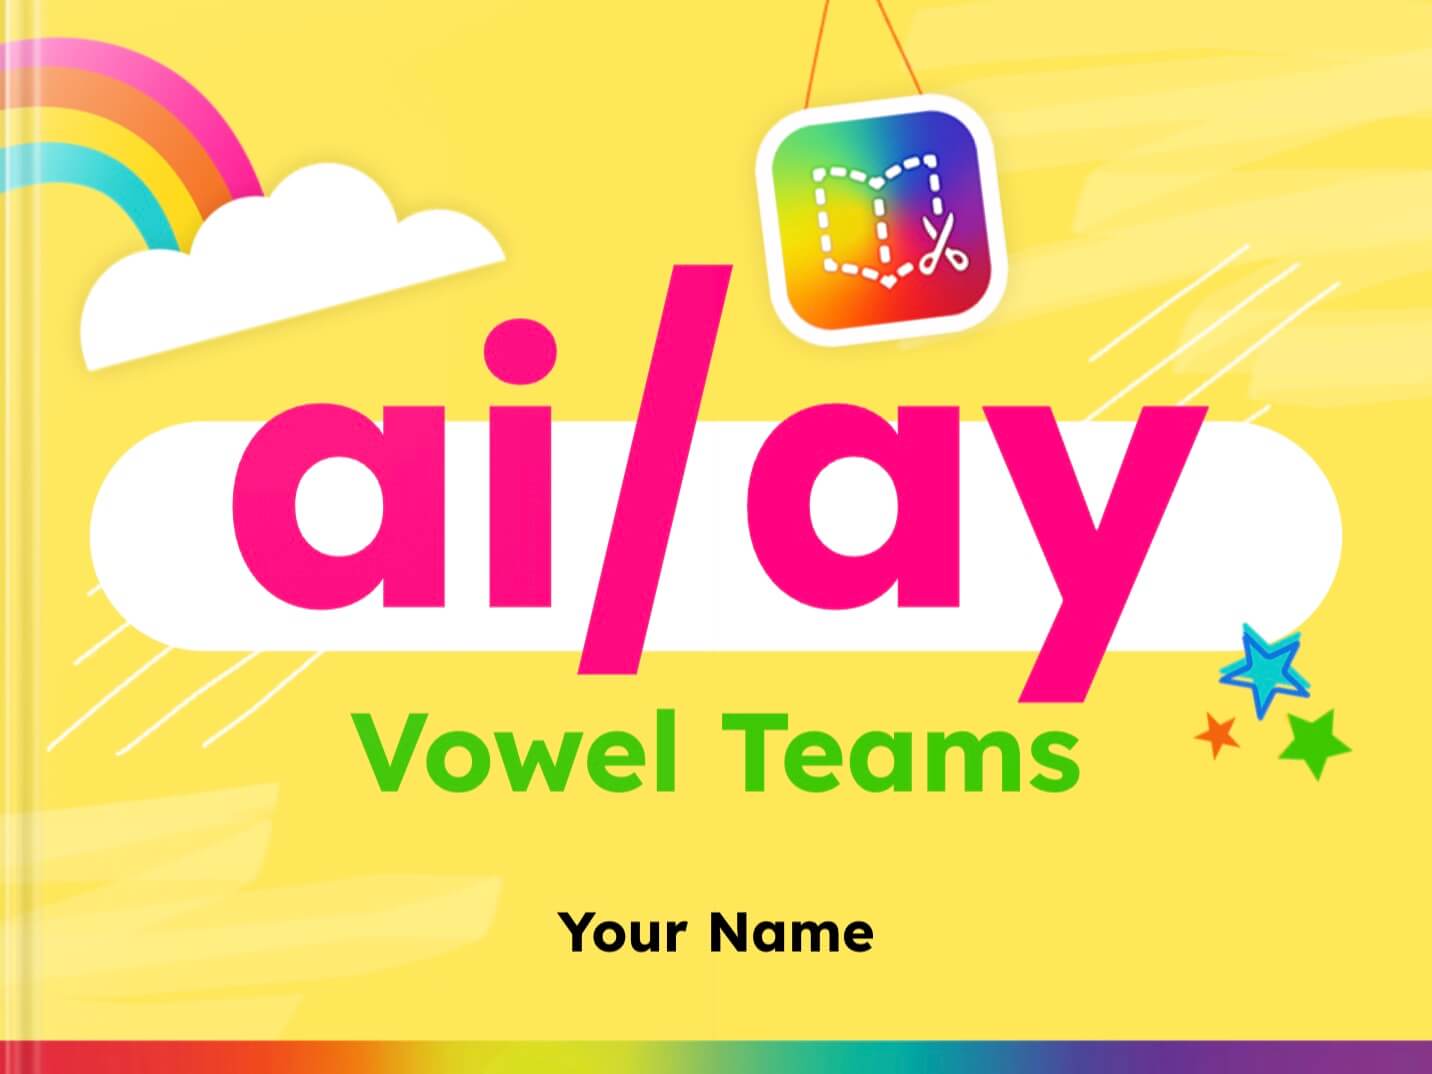 ai/ay vowel teams